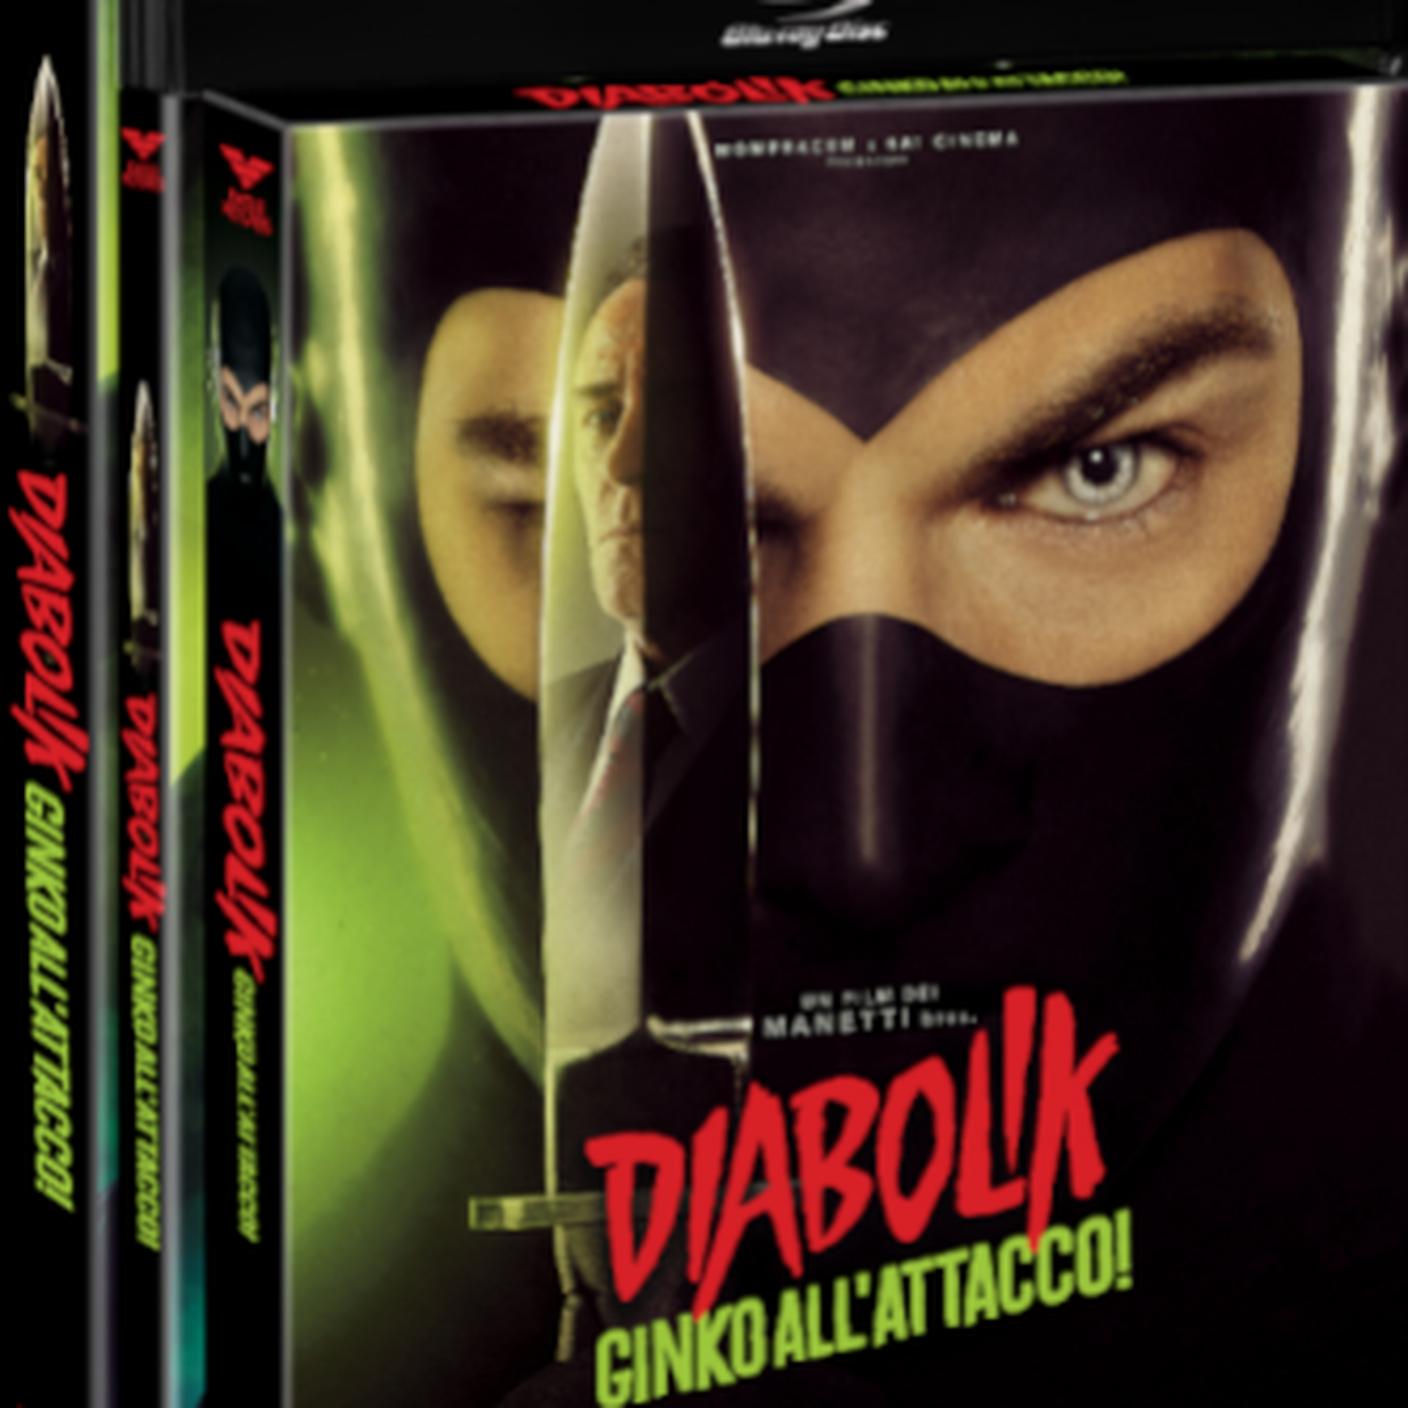 "Diabolik 2 - Ginko all'attacco!" di Manetti Bros, 01 Distribution (dettaglio di copertina)